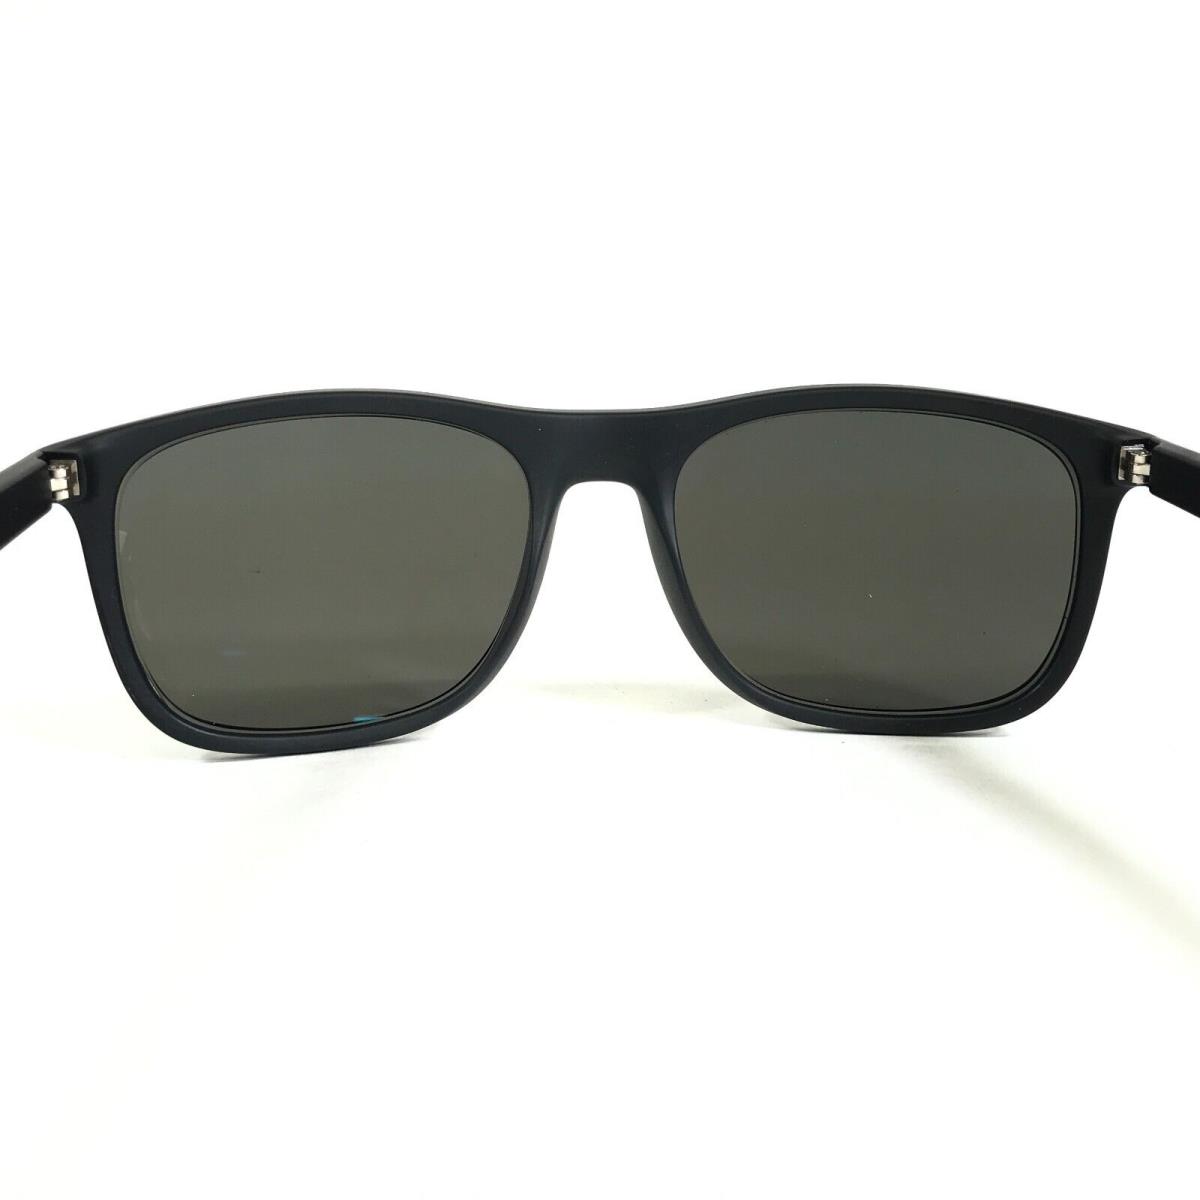 Emporio Armani sunglasses  - Black Frame, Gray Lens 7